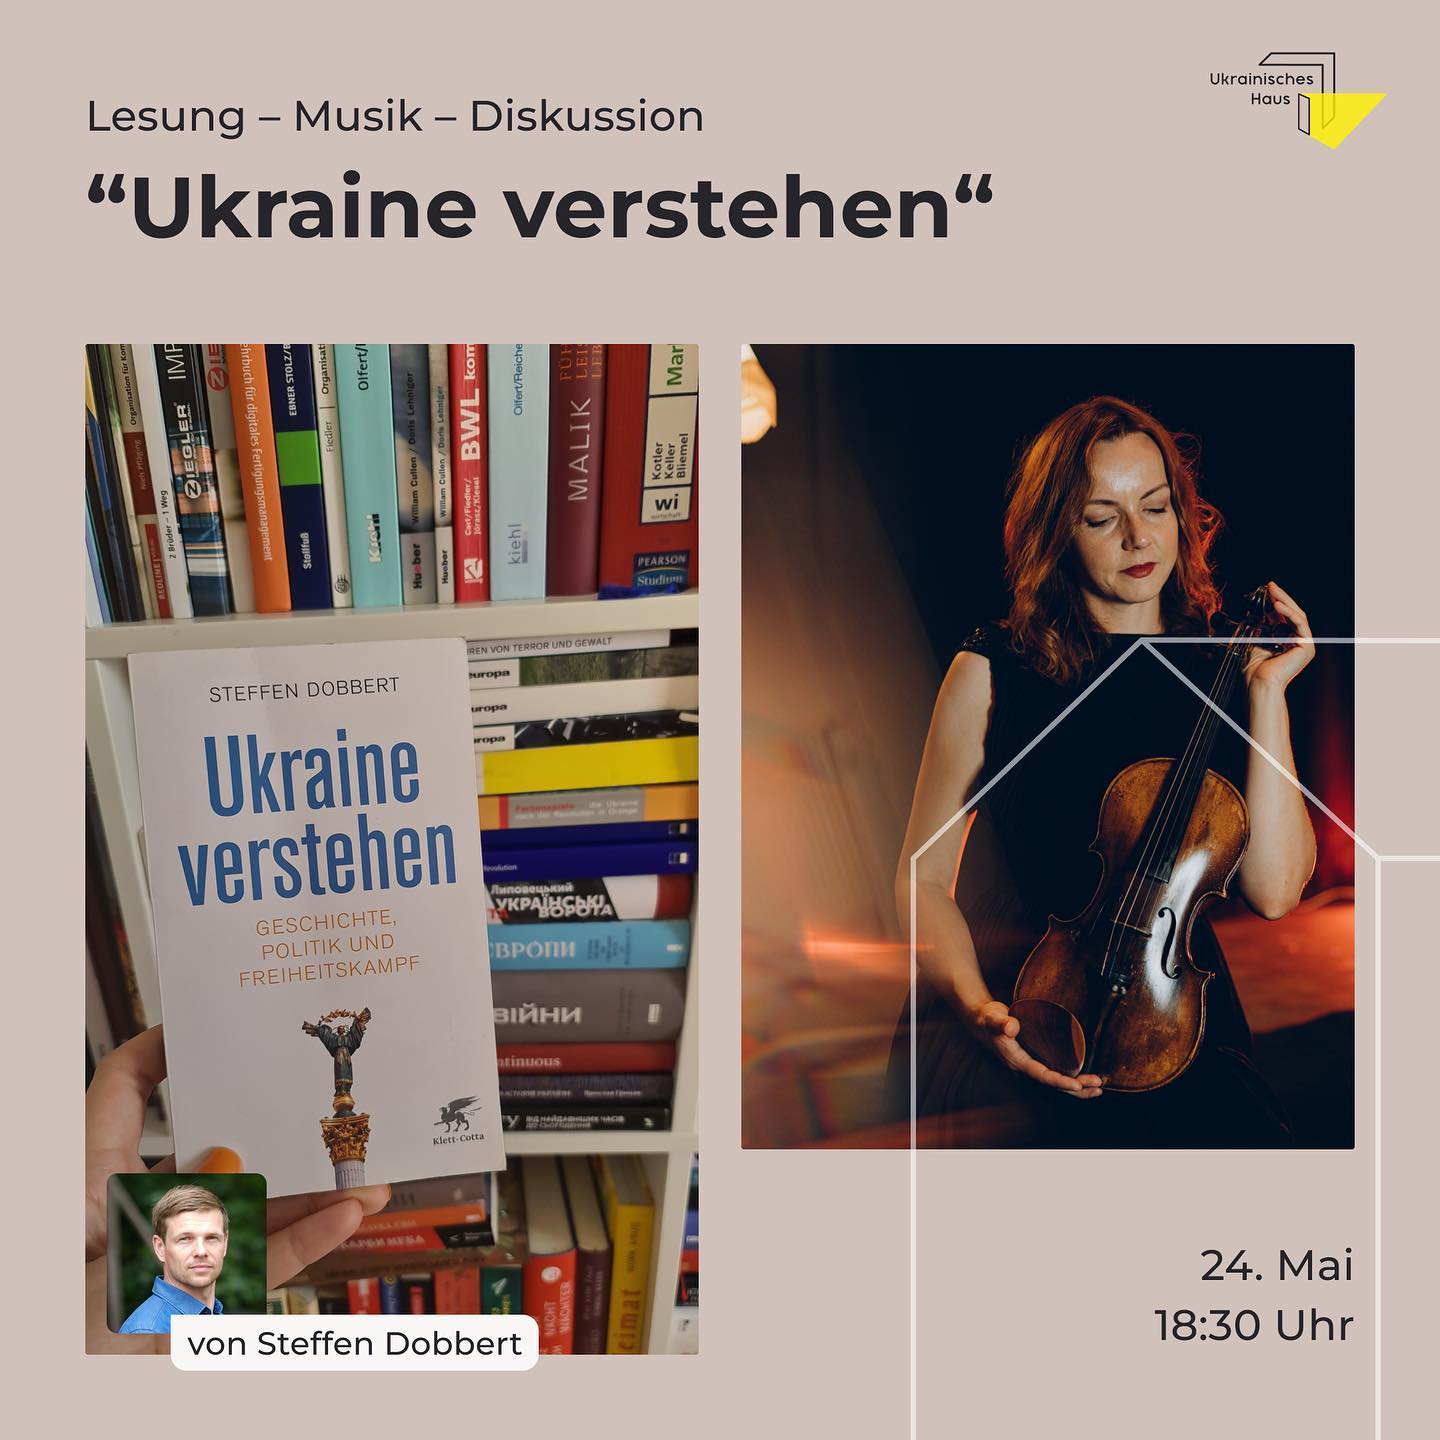 Ukraine verstehen – Lesung, Musik und Diskussion